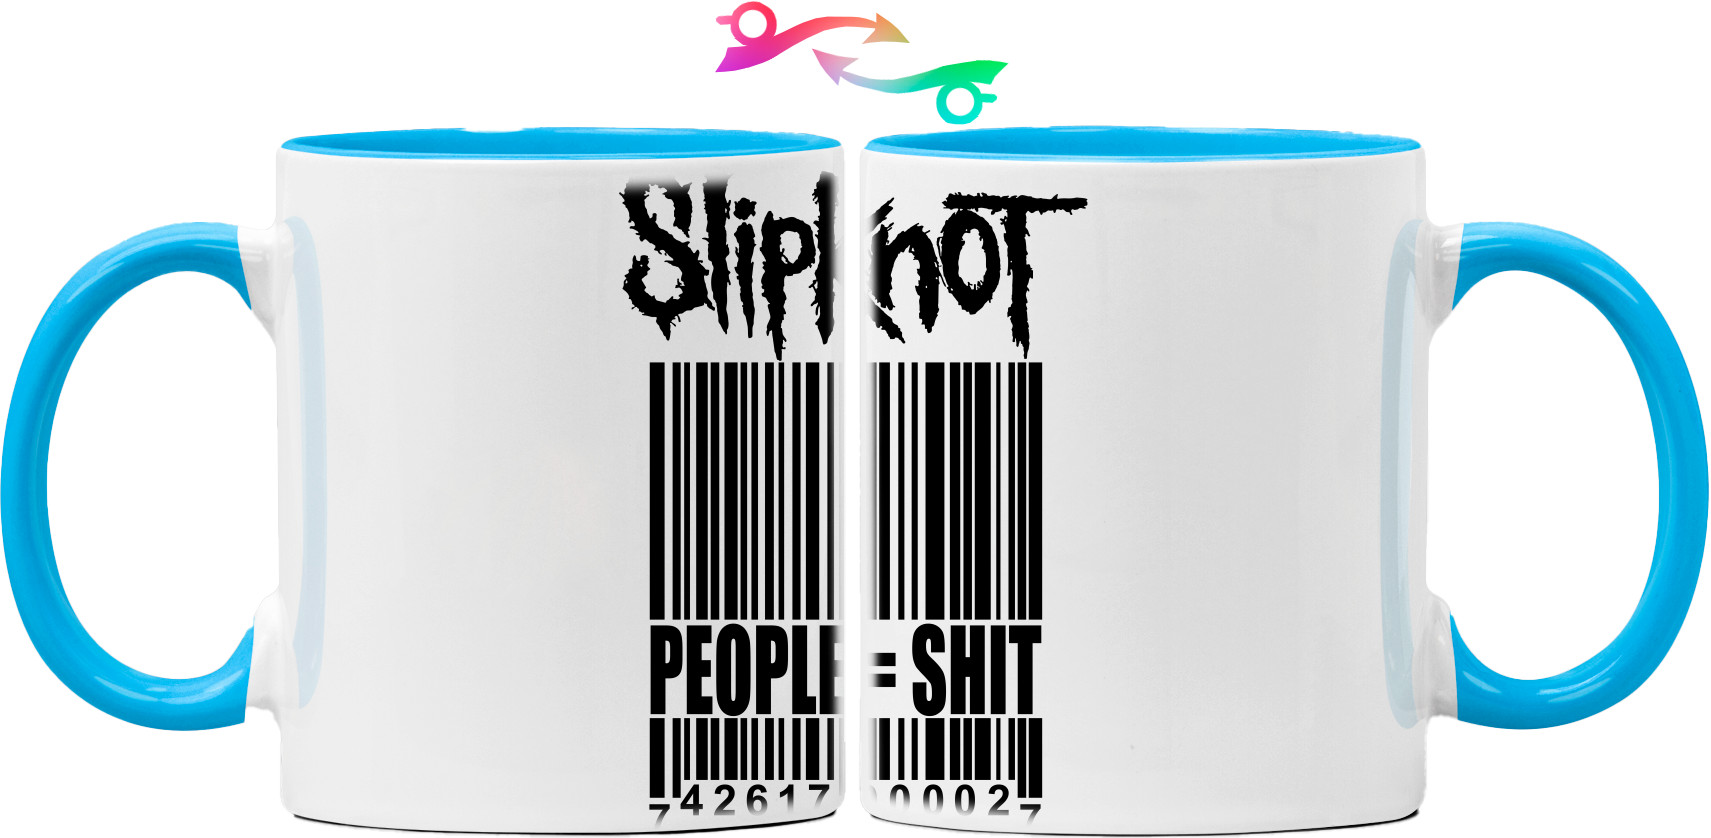 Slipknot - Кружка - Slipknot People - Mfest